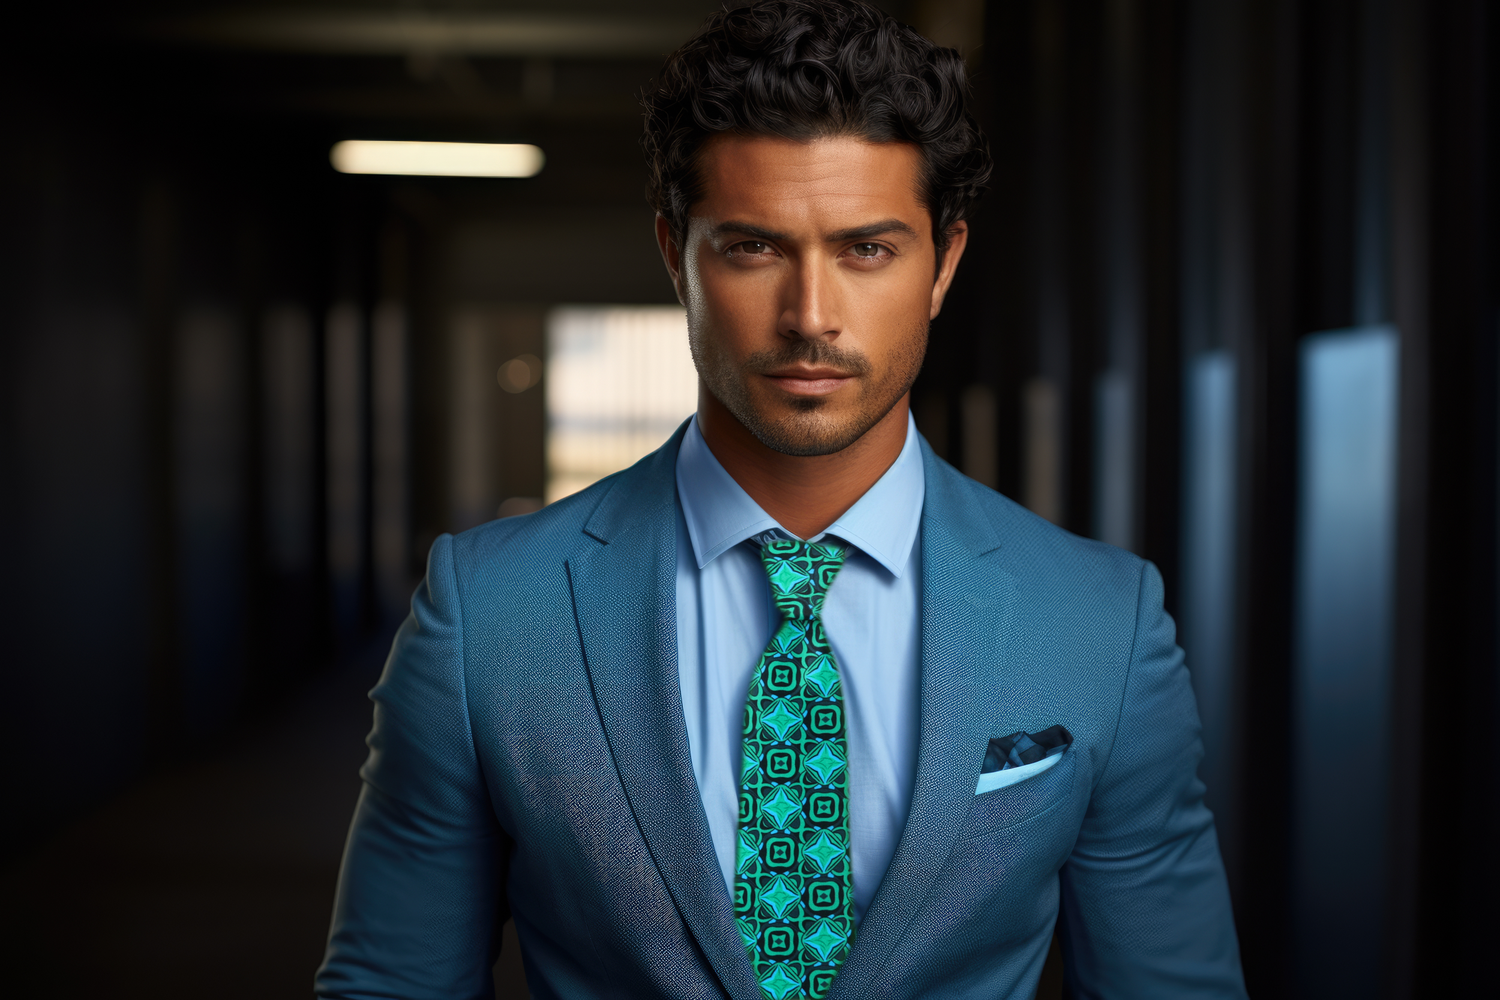 Green Geometric Tie On Man Wearing Suit